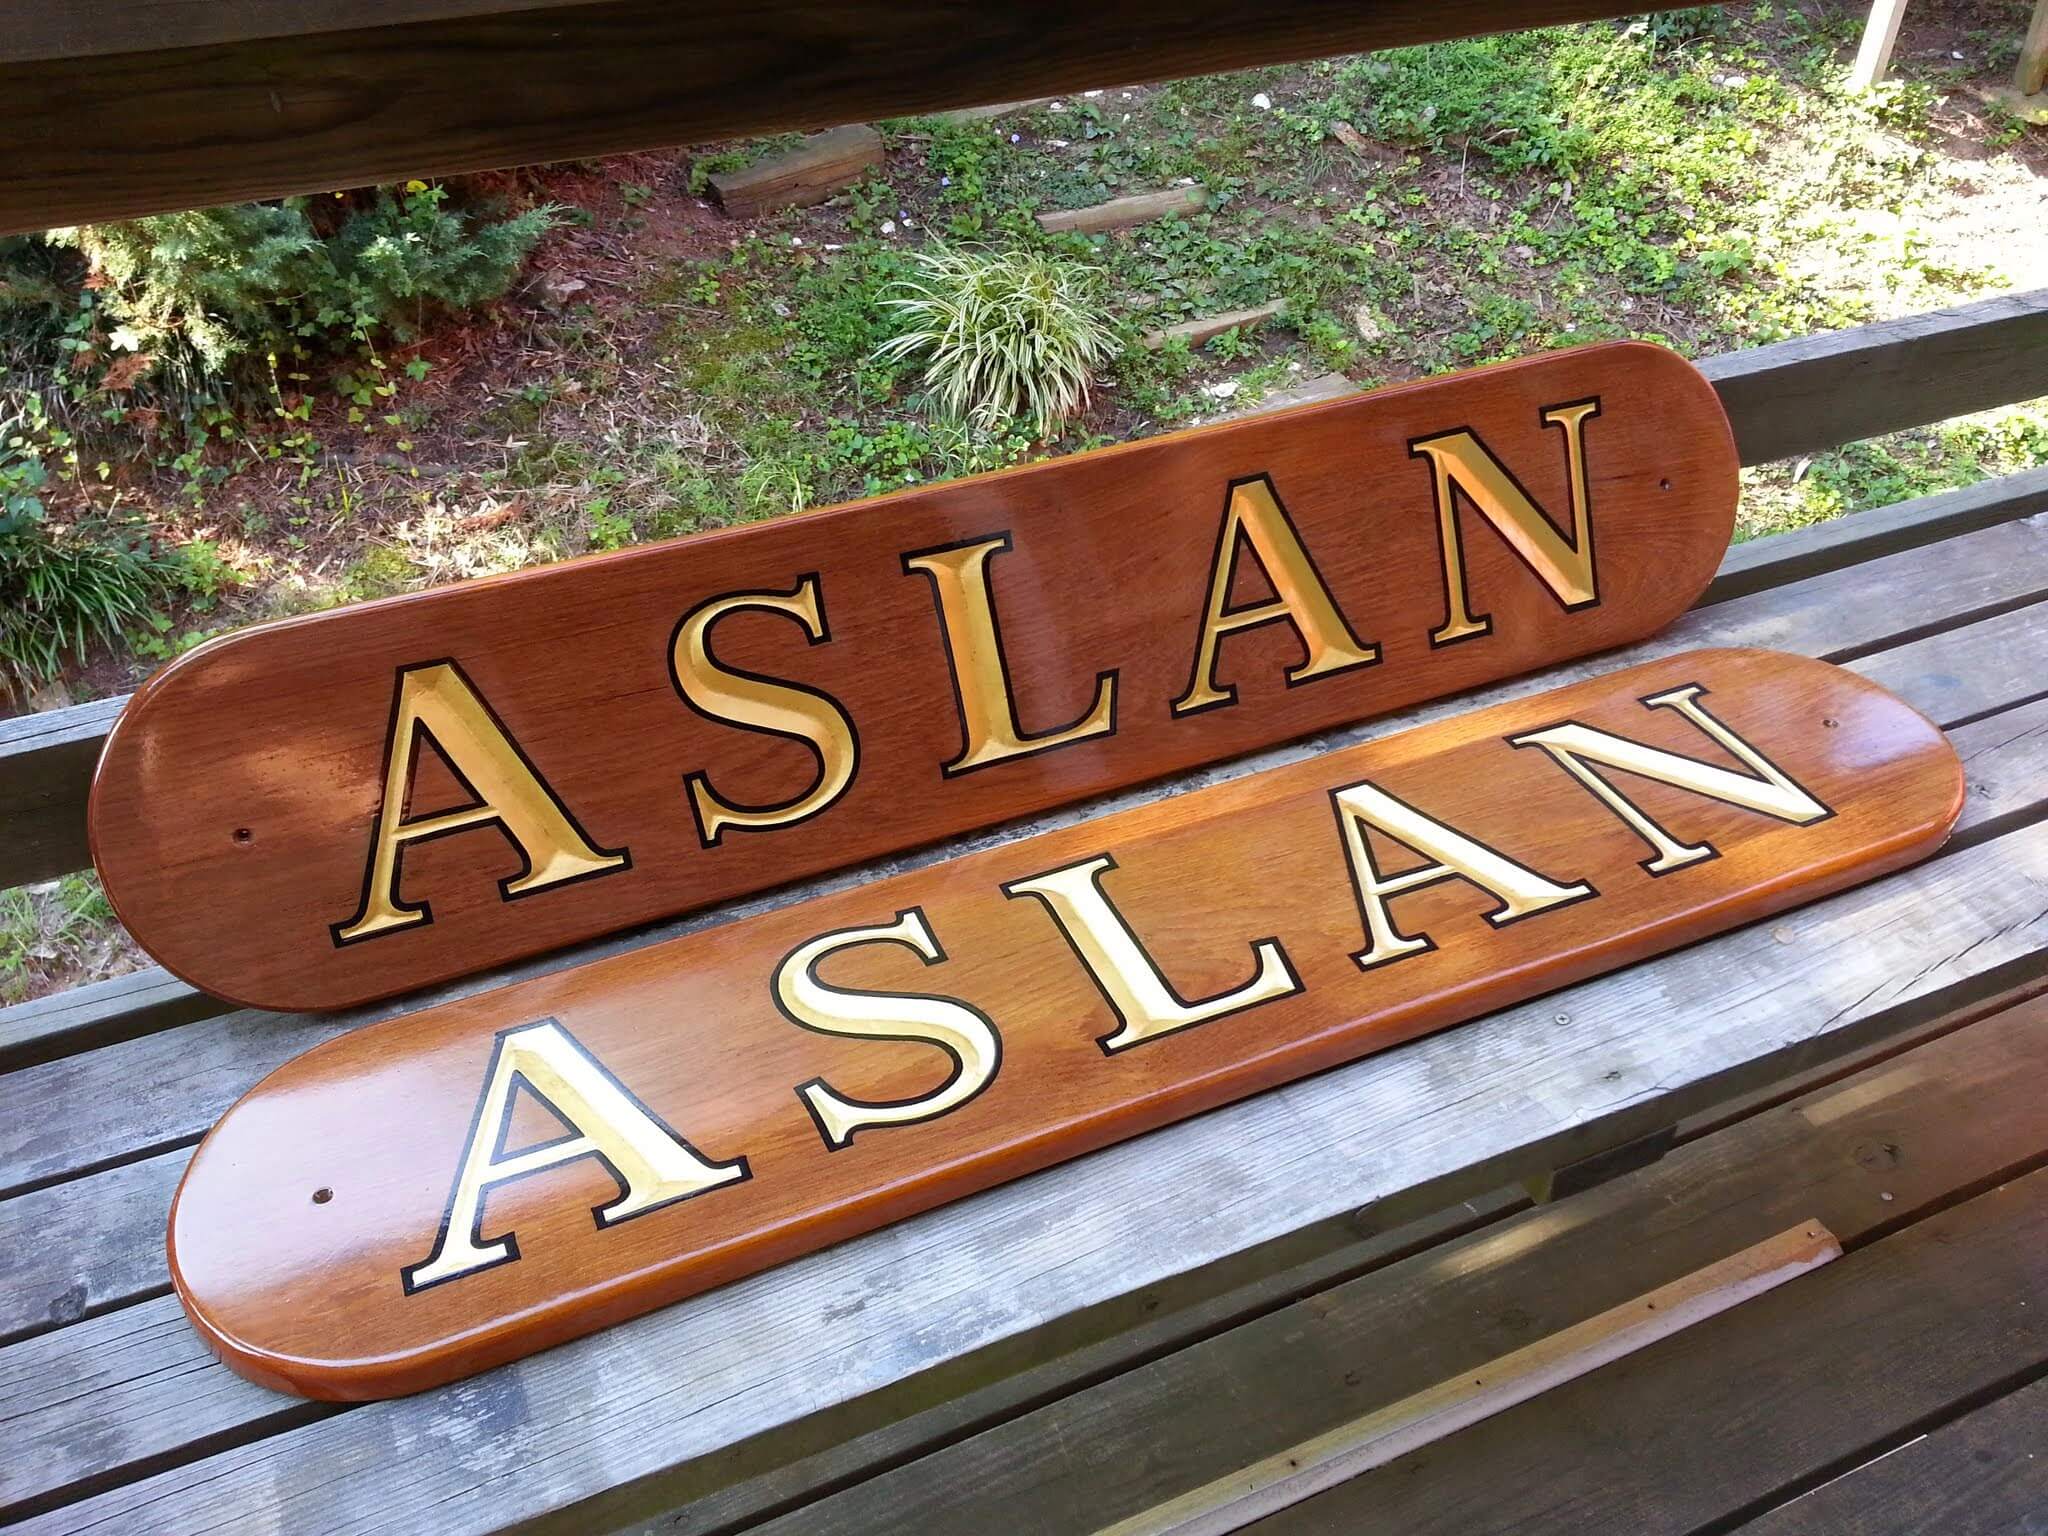 Carved quarterboards for Aslan